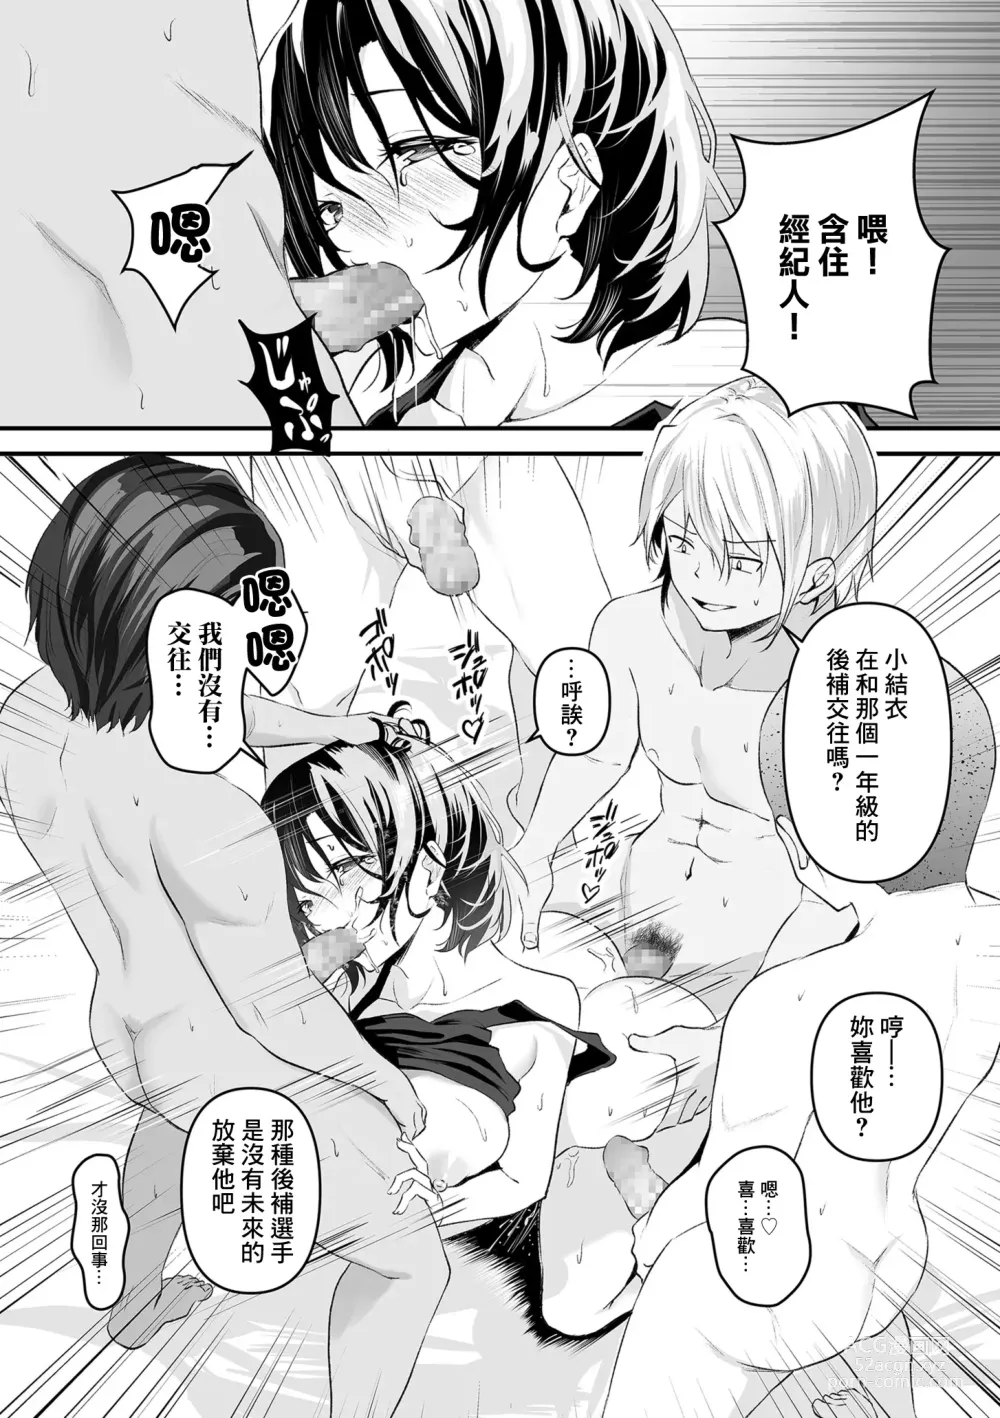 Page 7 of manga 集訓手淫對象